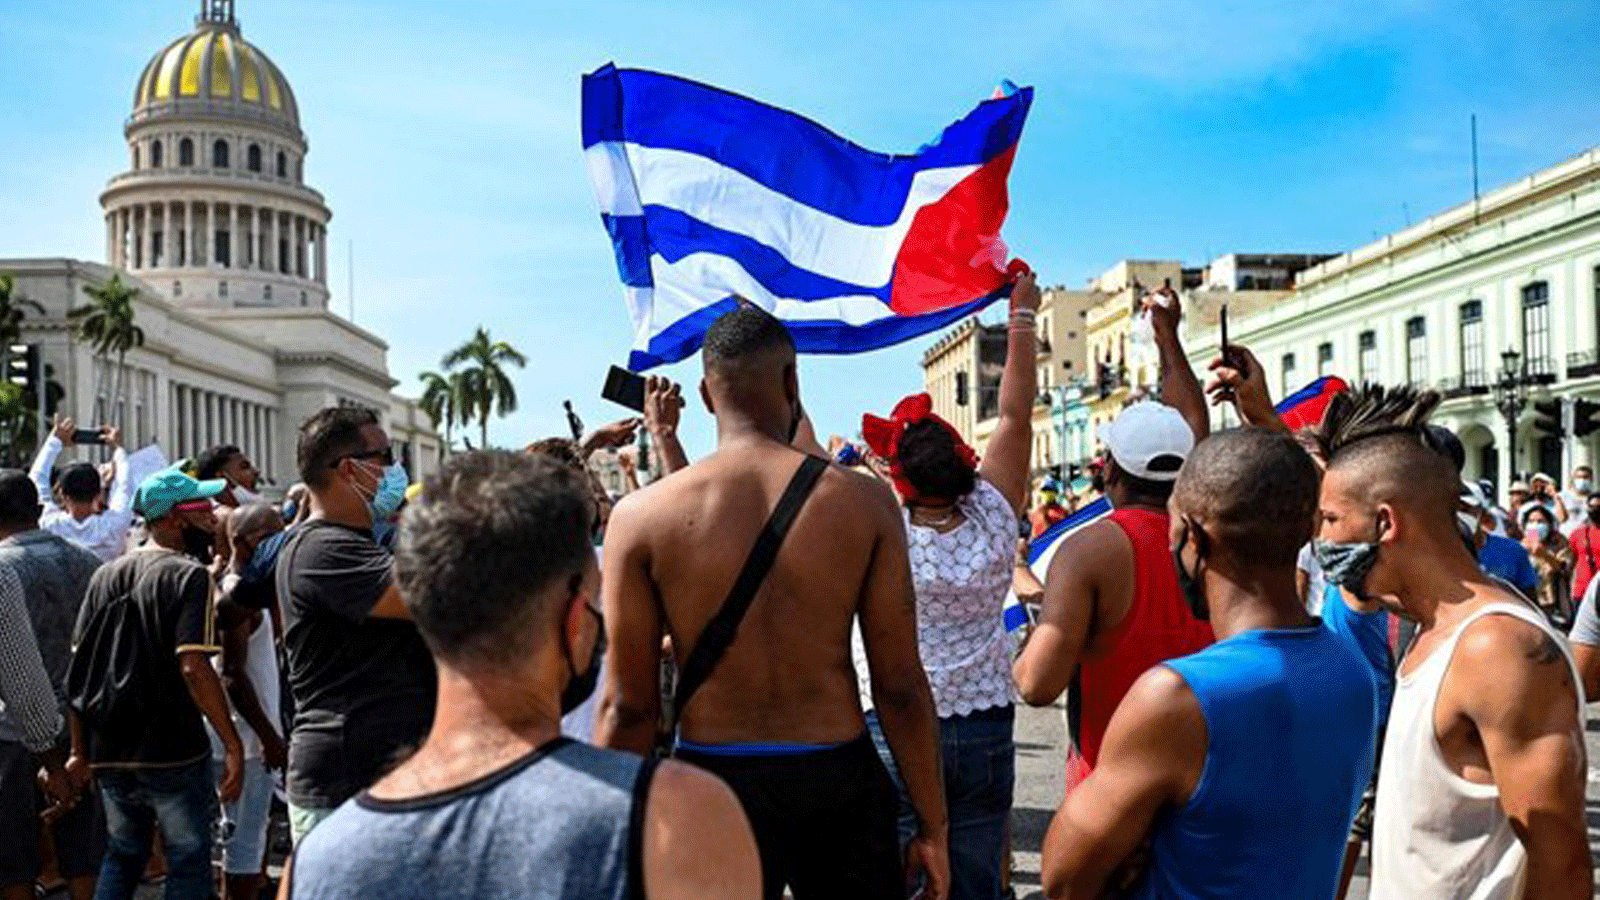 كوبيون خارج مبنى الكابيتول في هافانا خلال مظاهرة ضد حكومة الرئيس الكوبي ميغيل دياز كانيل. 11 تموز/ يوليو 2021